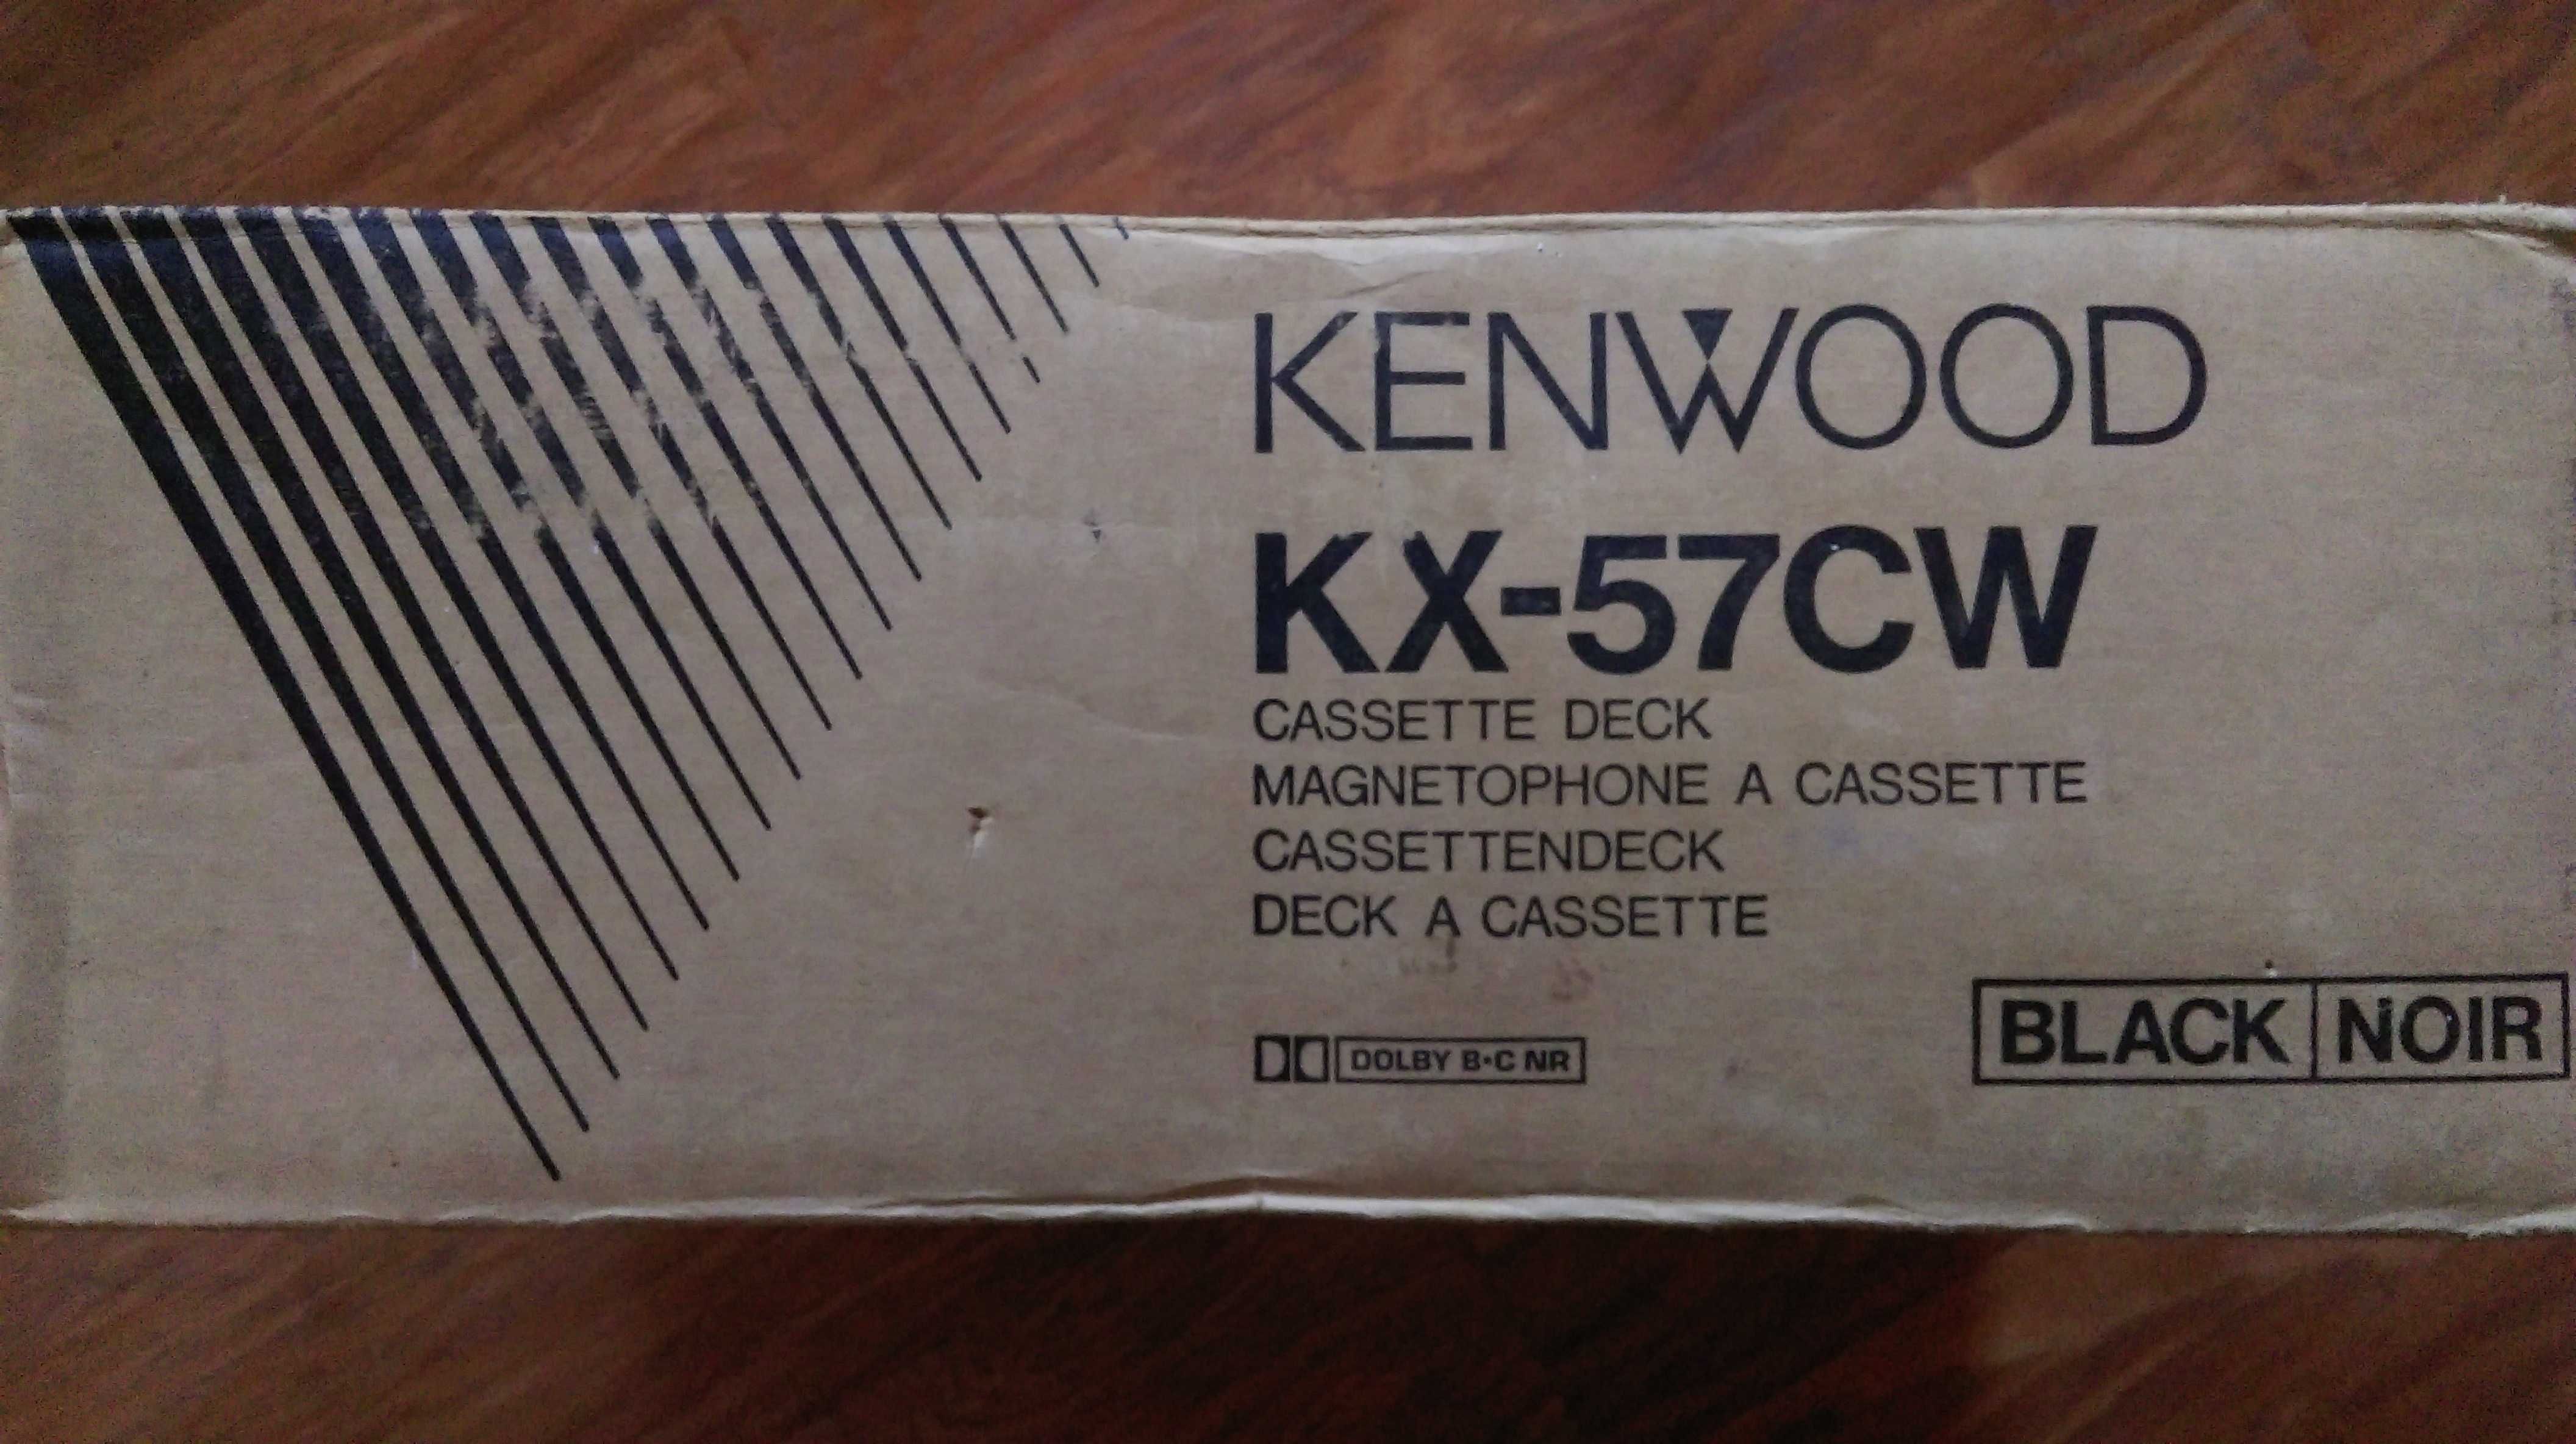 Kenwood KX-57CW - коробка , упаковка (для  кассетной деки).